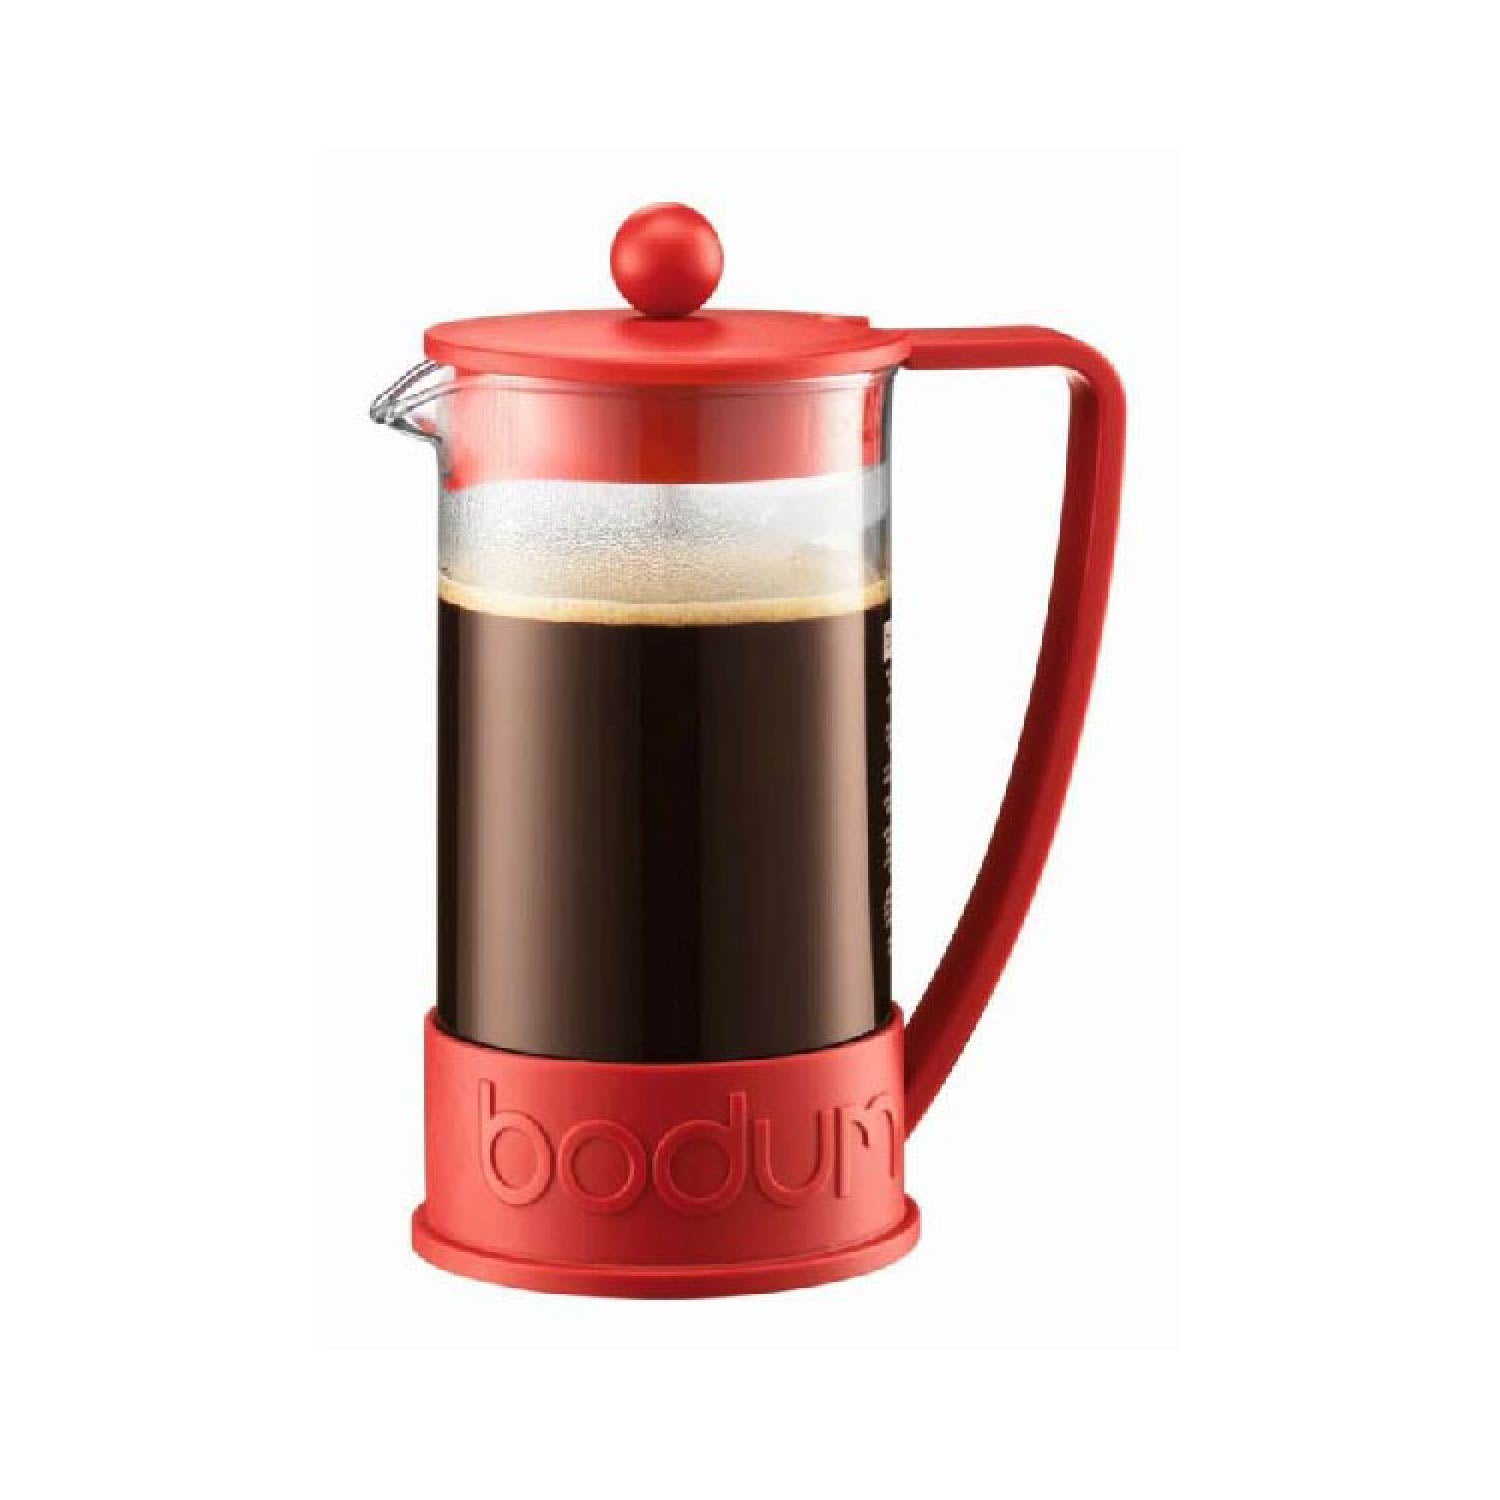 Bodum Chambord Classic French Press Coffee Maker Copper 8 Cup, 1.0